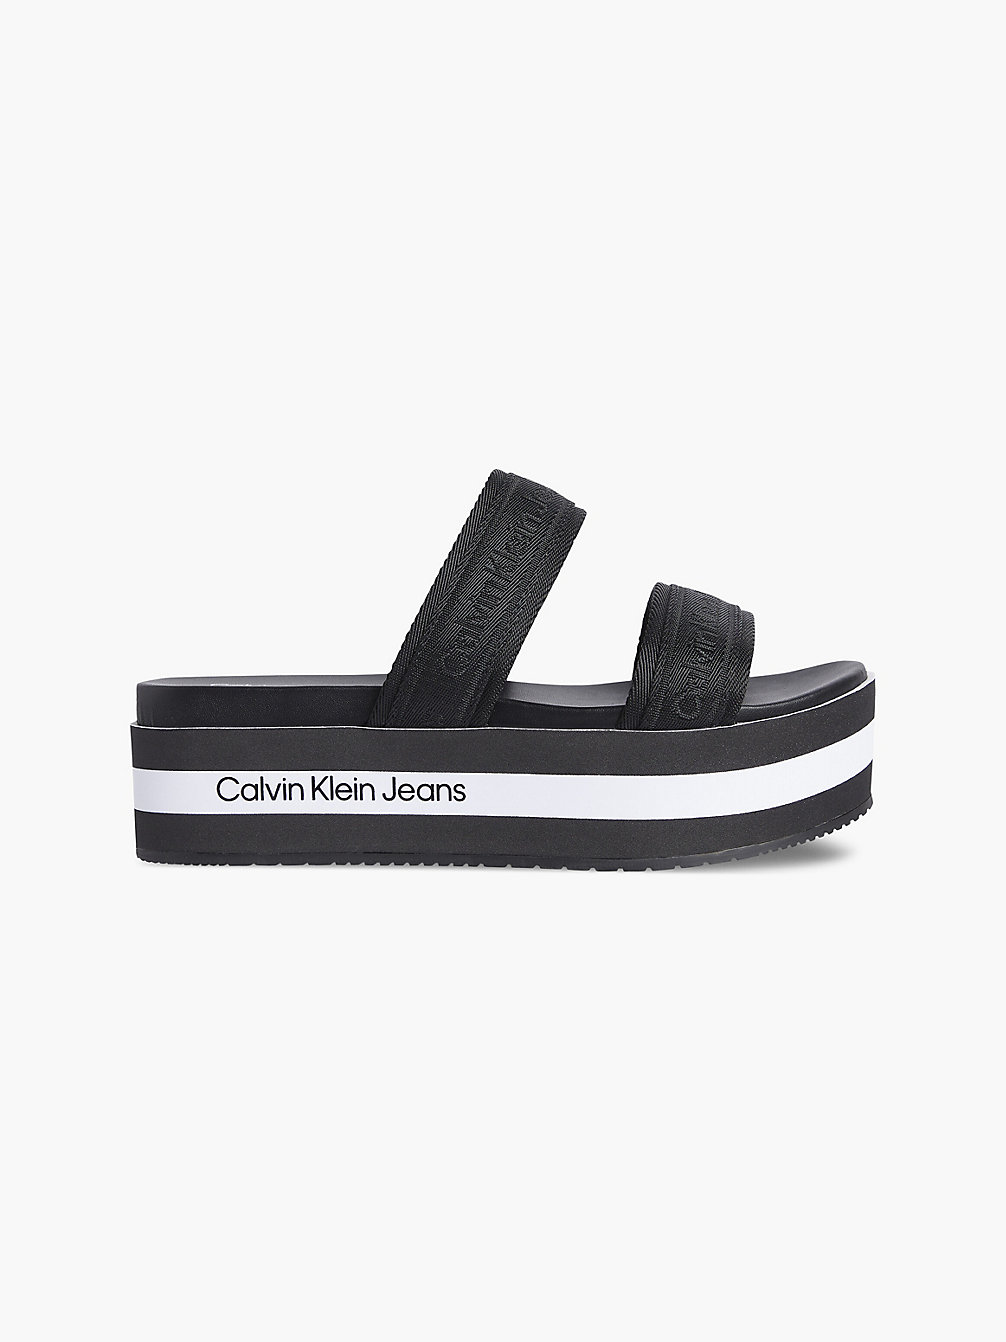 BLACK Recycled Platform Sandals undefined women Calvin Klein